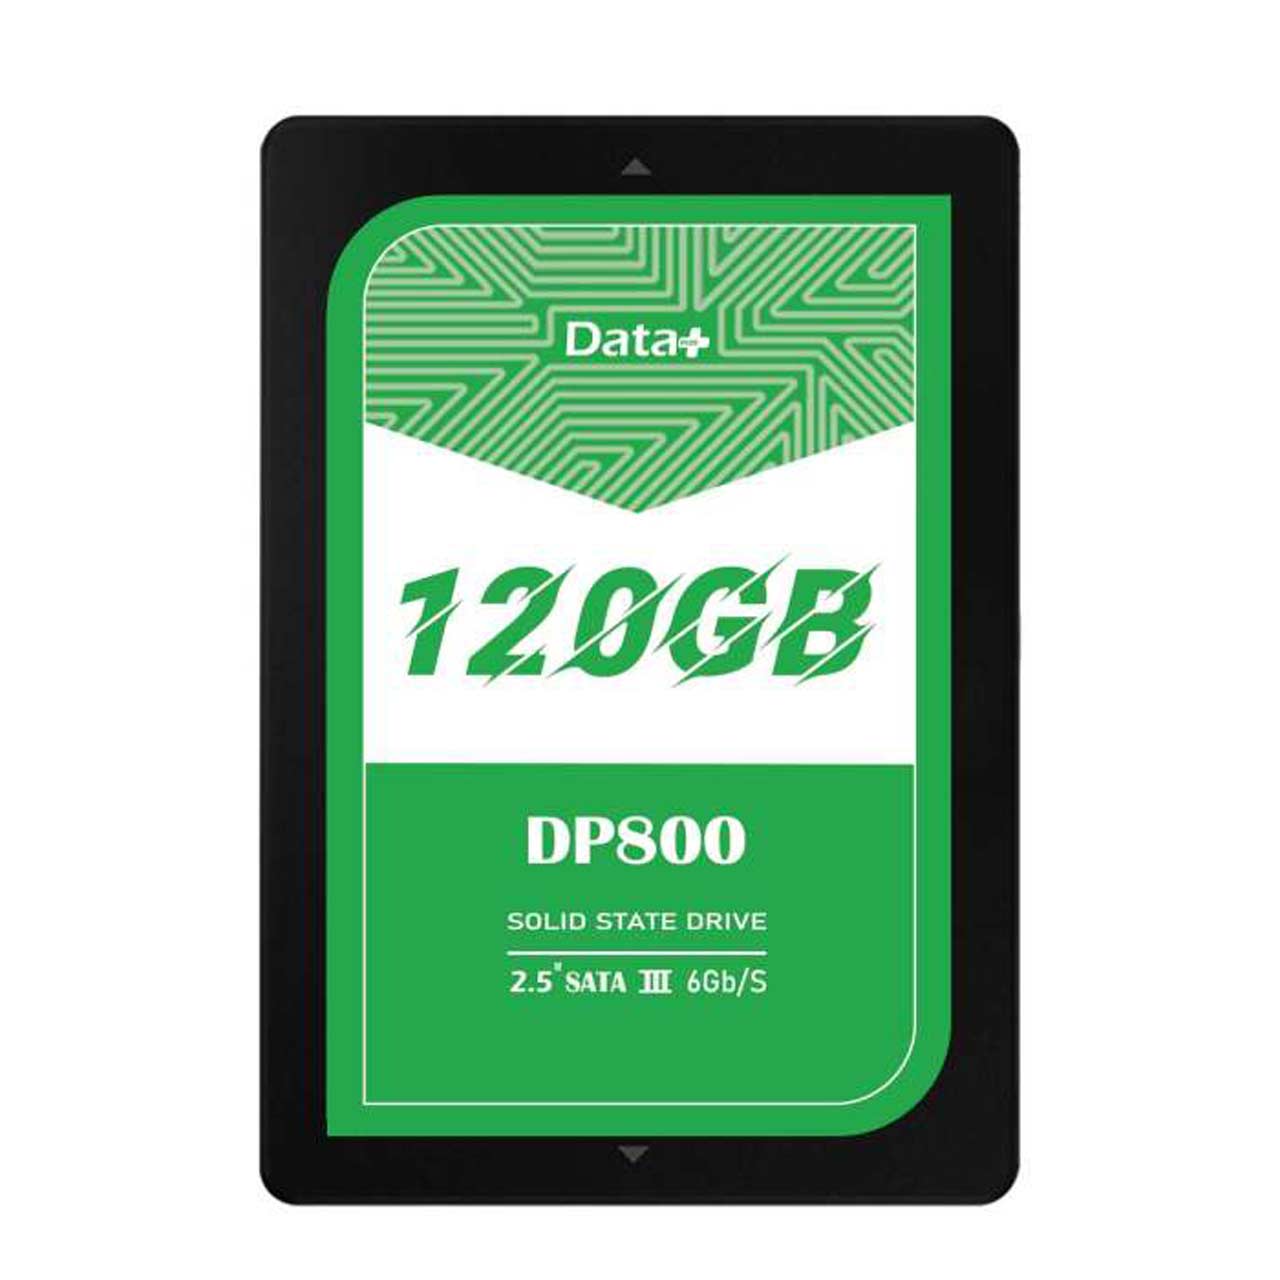 هارد Data Plus SSD مدل DP800 ظرفیت 120GB - مشکی (گارانتی IPM)